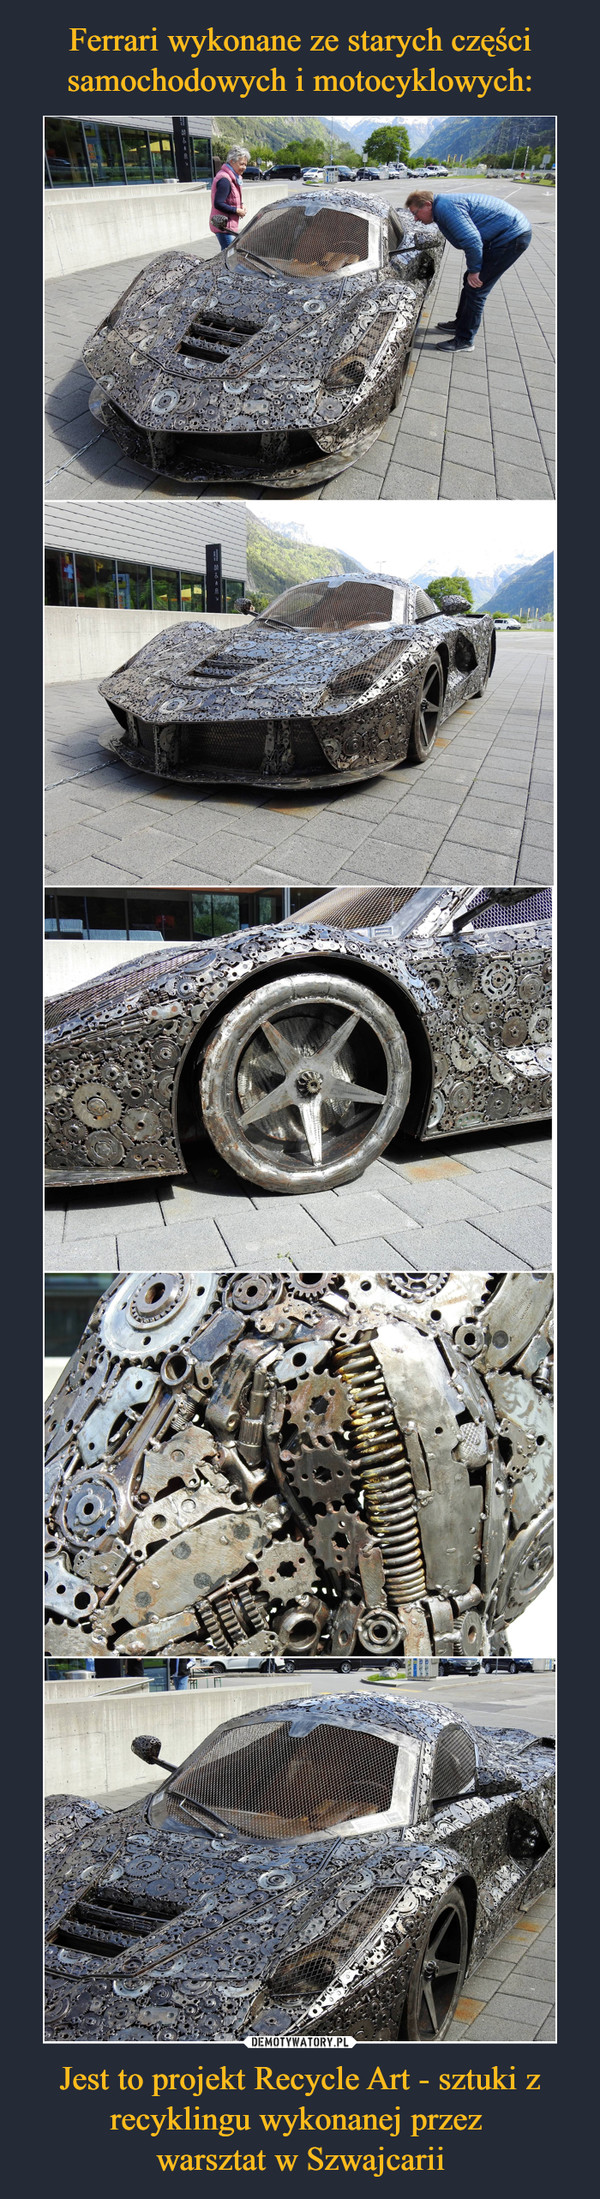 Ferrari wykonane ze starych części samochodowych i motocyklowych: Jest to projekt Recycle Art - sztuki z recyklingu wykonanej przez 
warsztat w Szwajcarii